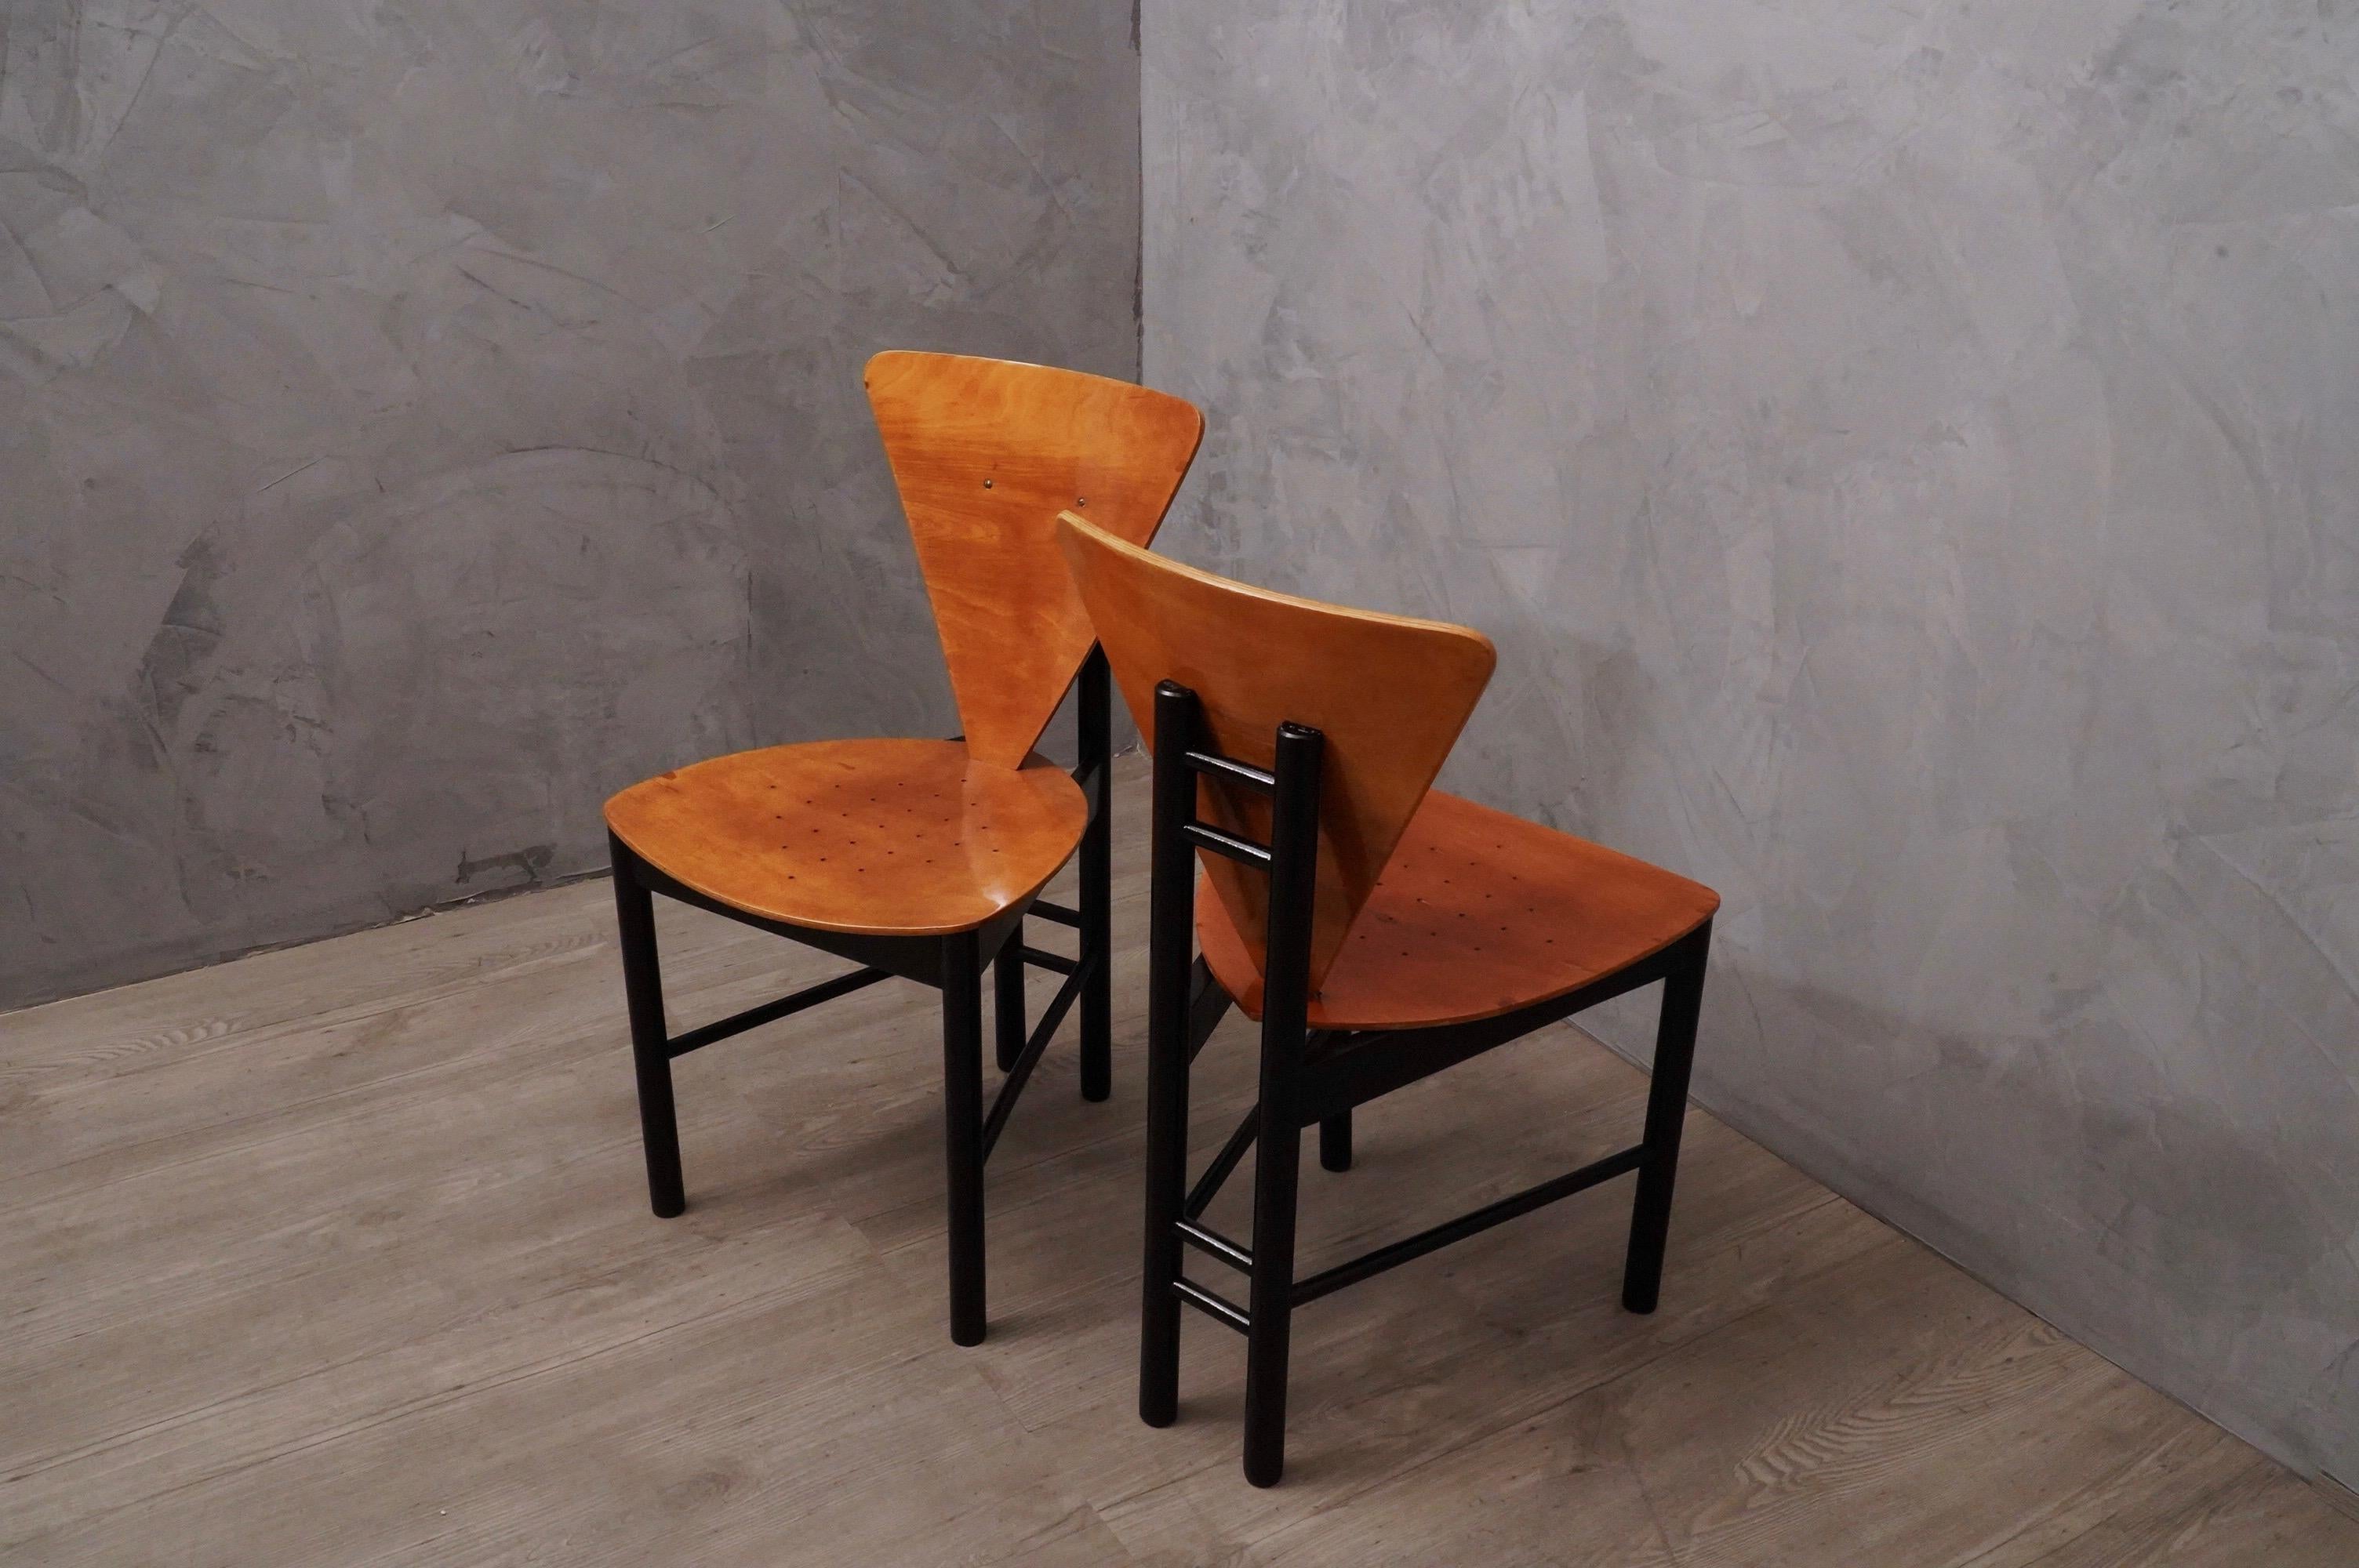 Paire de chaises latérales au style très rigide et au design surprenant, dans le style italien caractéristique de cette période.

La paire de chaises a une structure en bois de hêtre laqué avec de la gomme-laque noire, tandis que l'assise et le